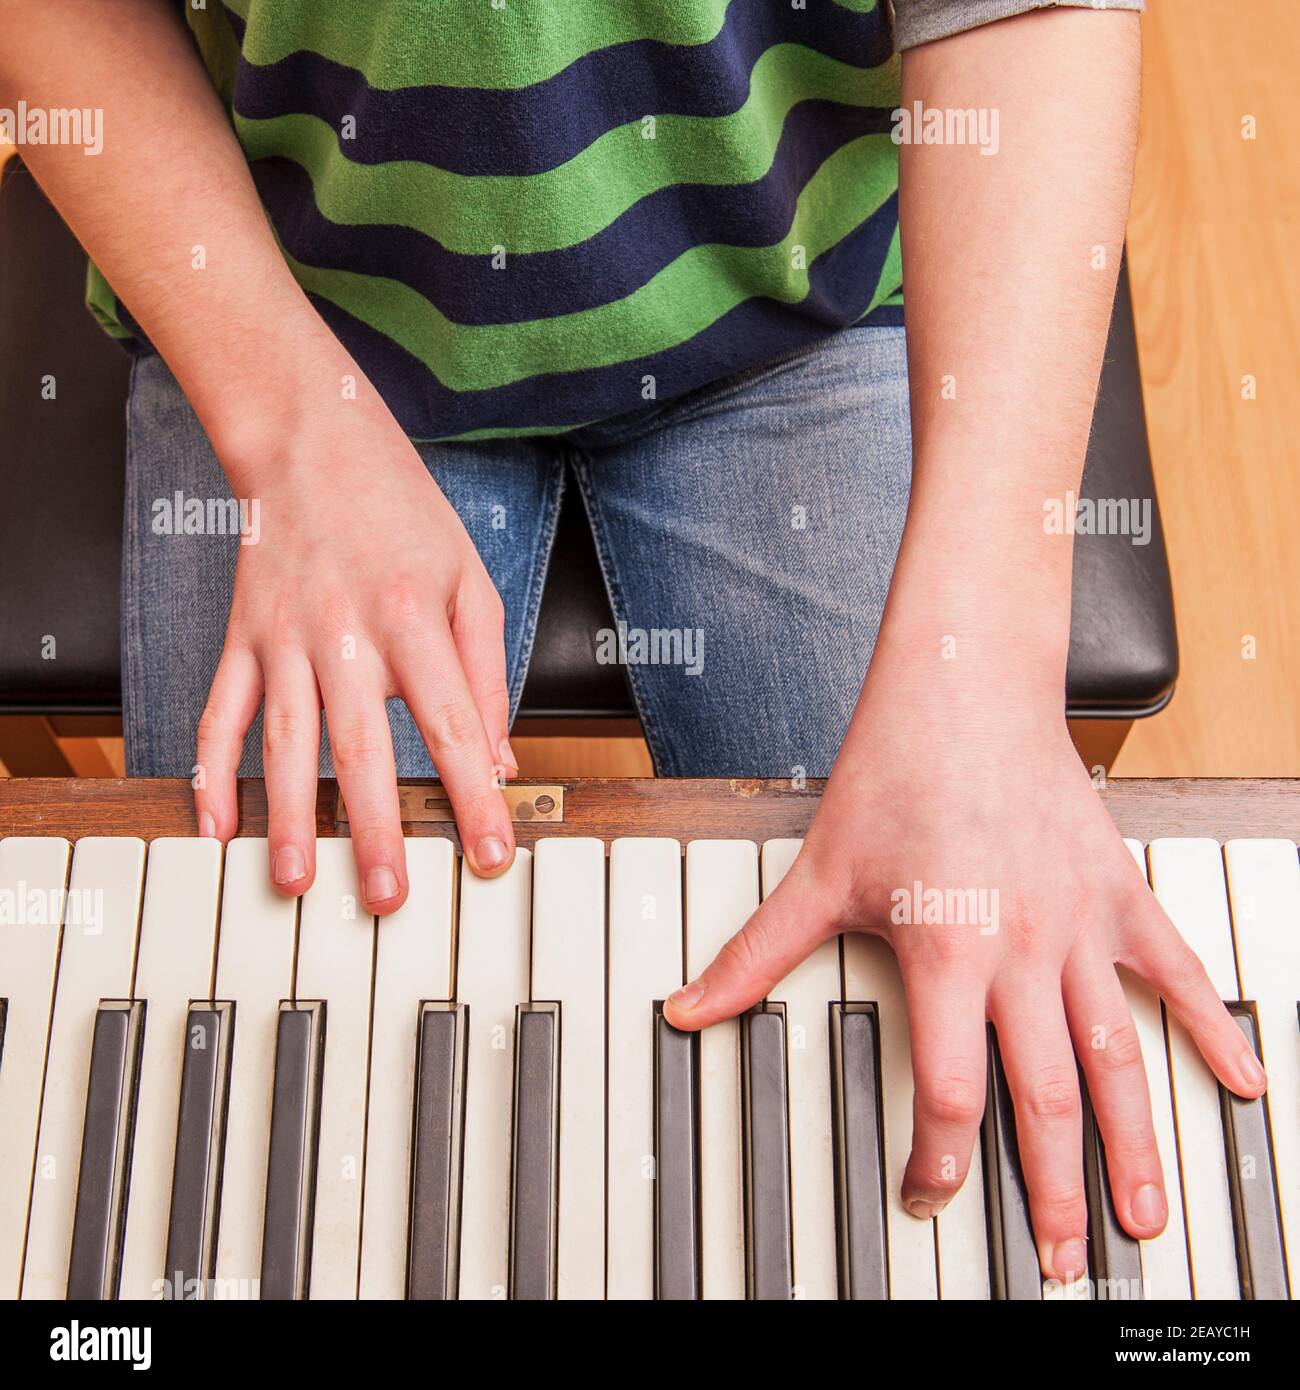 Un ragazzo di 13 anni suona su un pianoforte Foto Stock